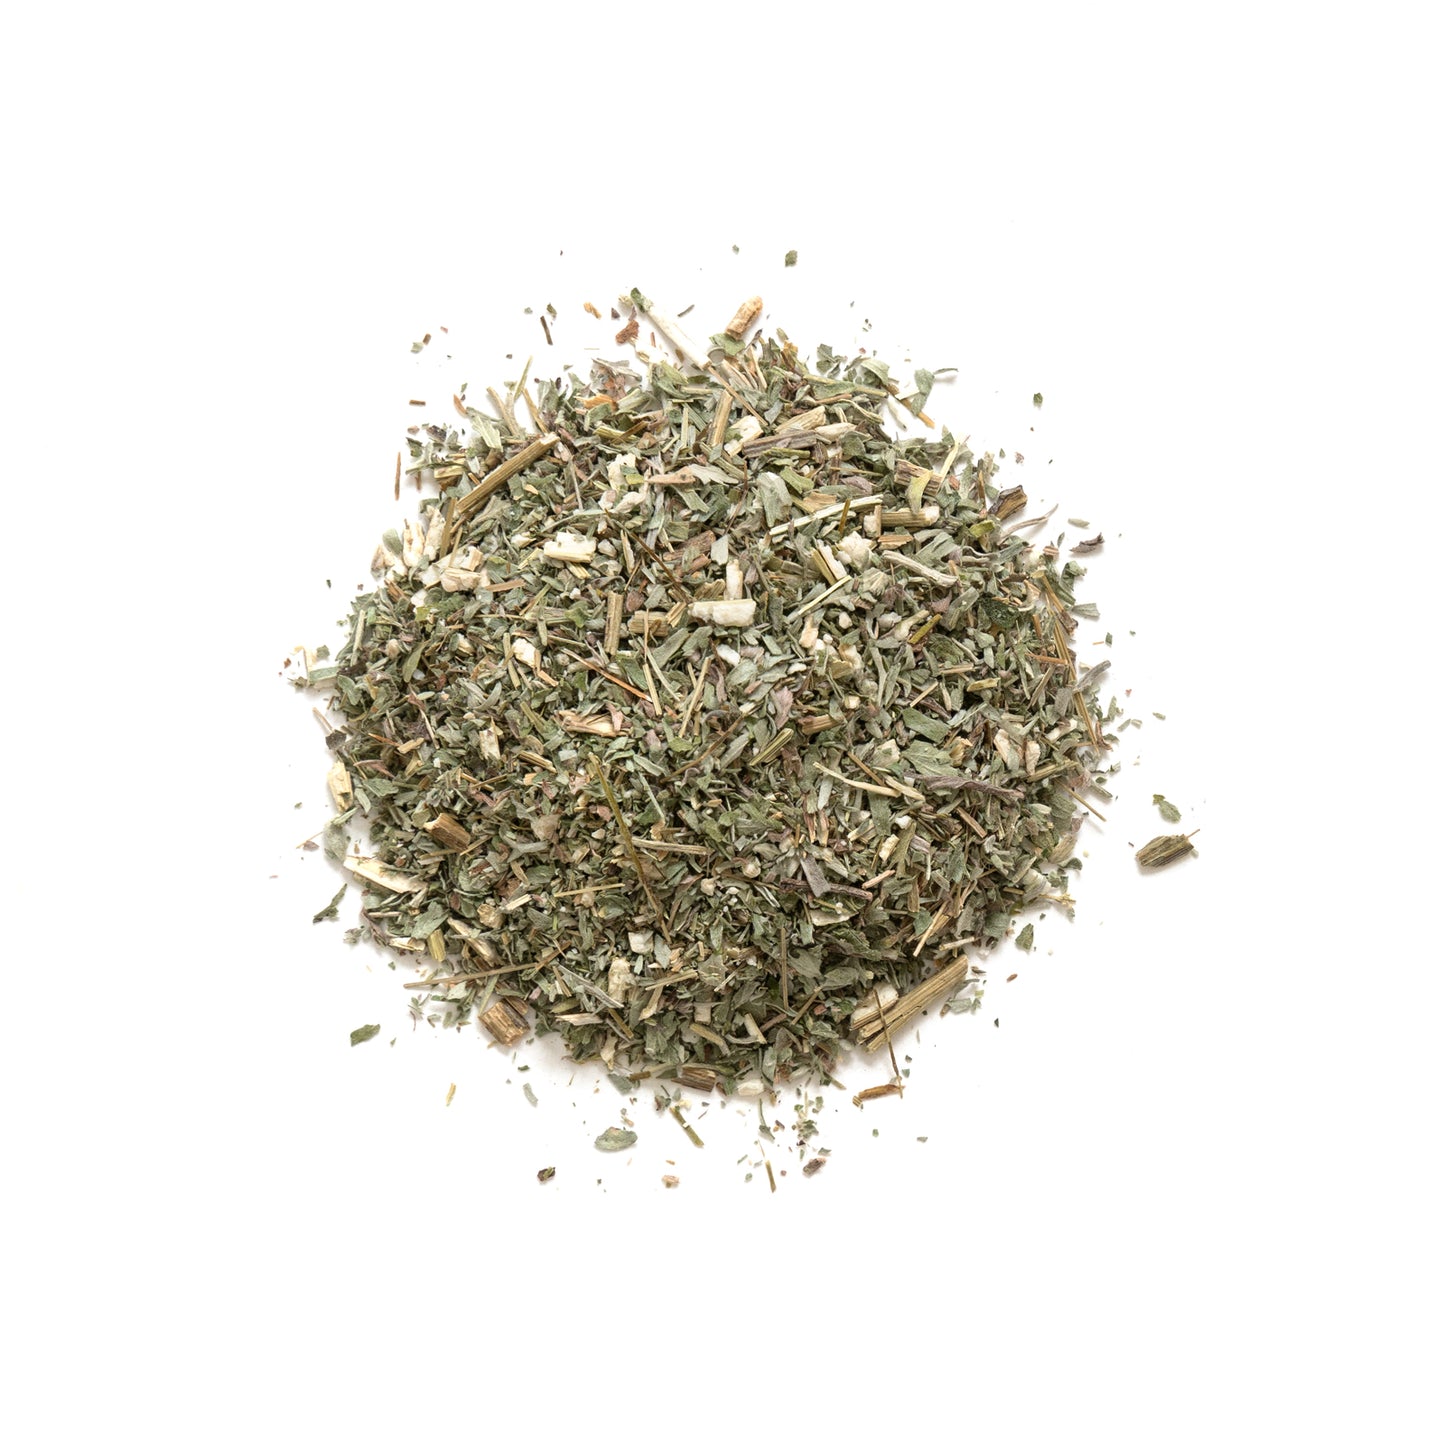 Primary Image of Wormwood (Artemisia absinthium)